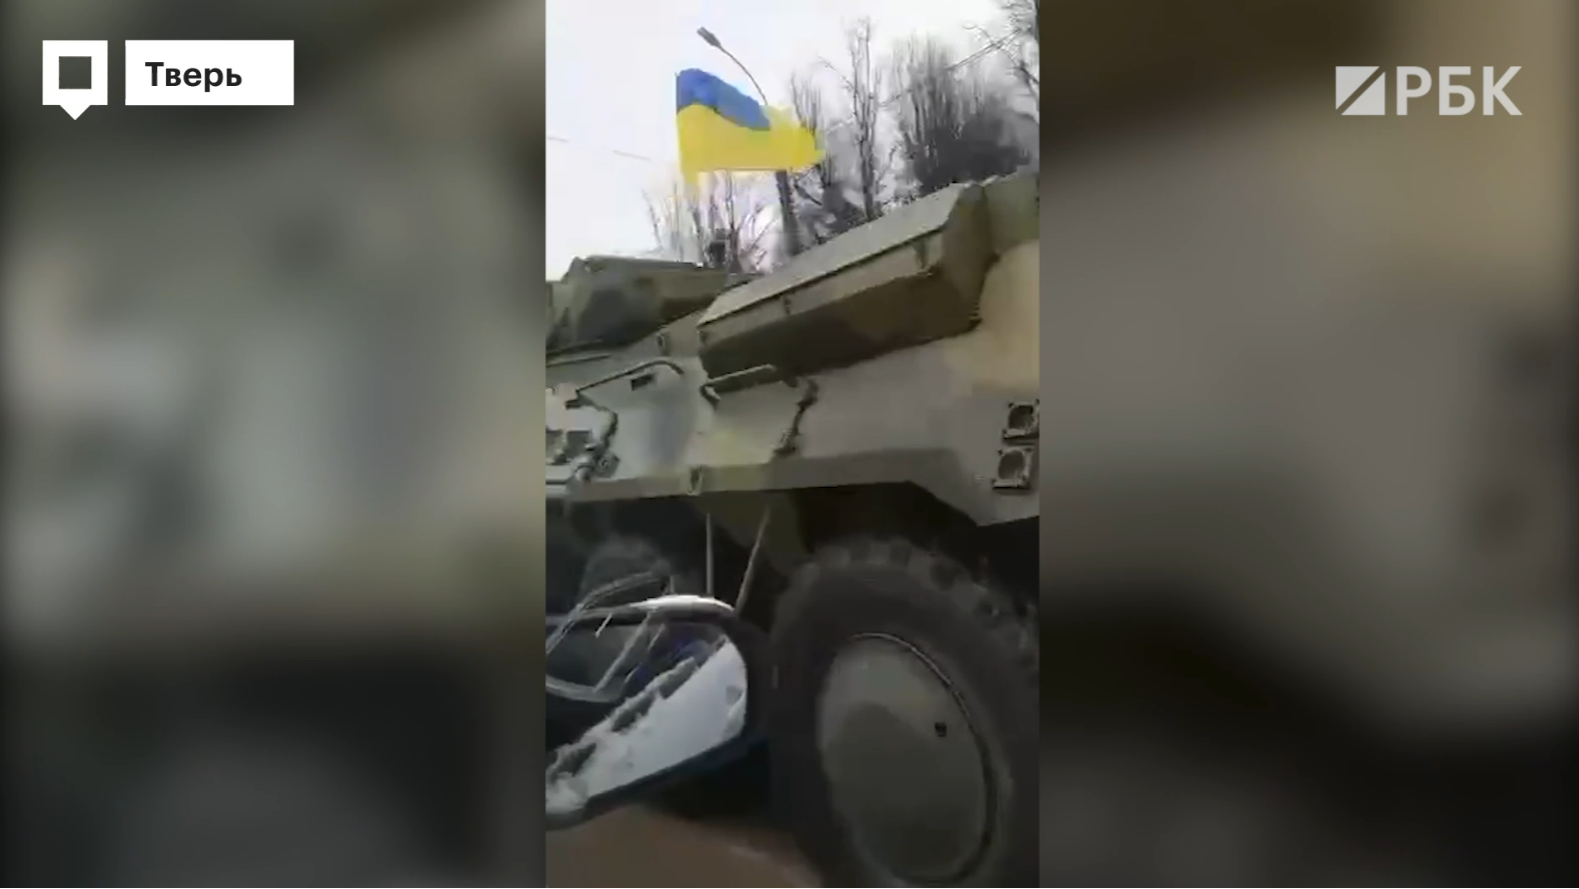 Власти объяснили появление бэтээров с флагами Украины на улицах Твери